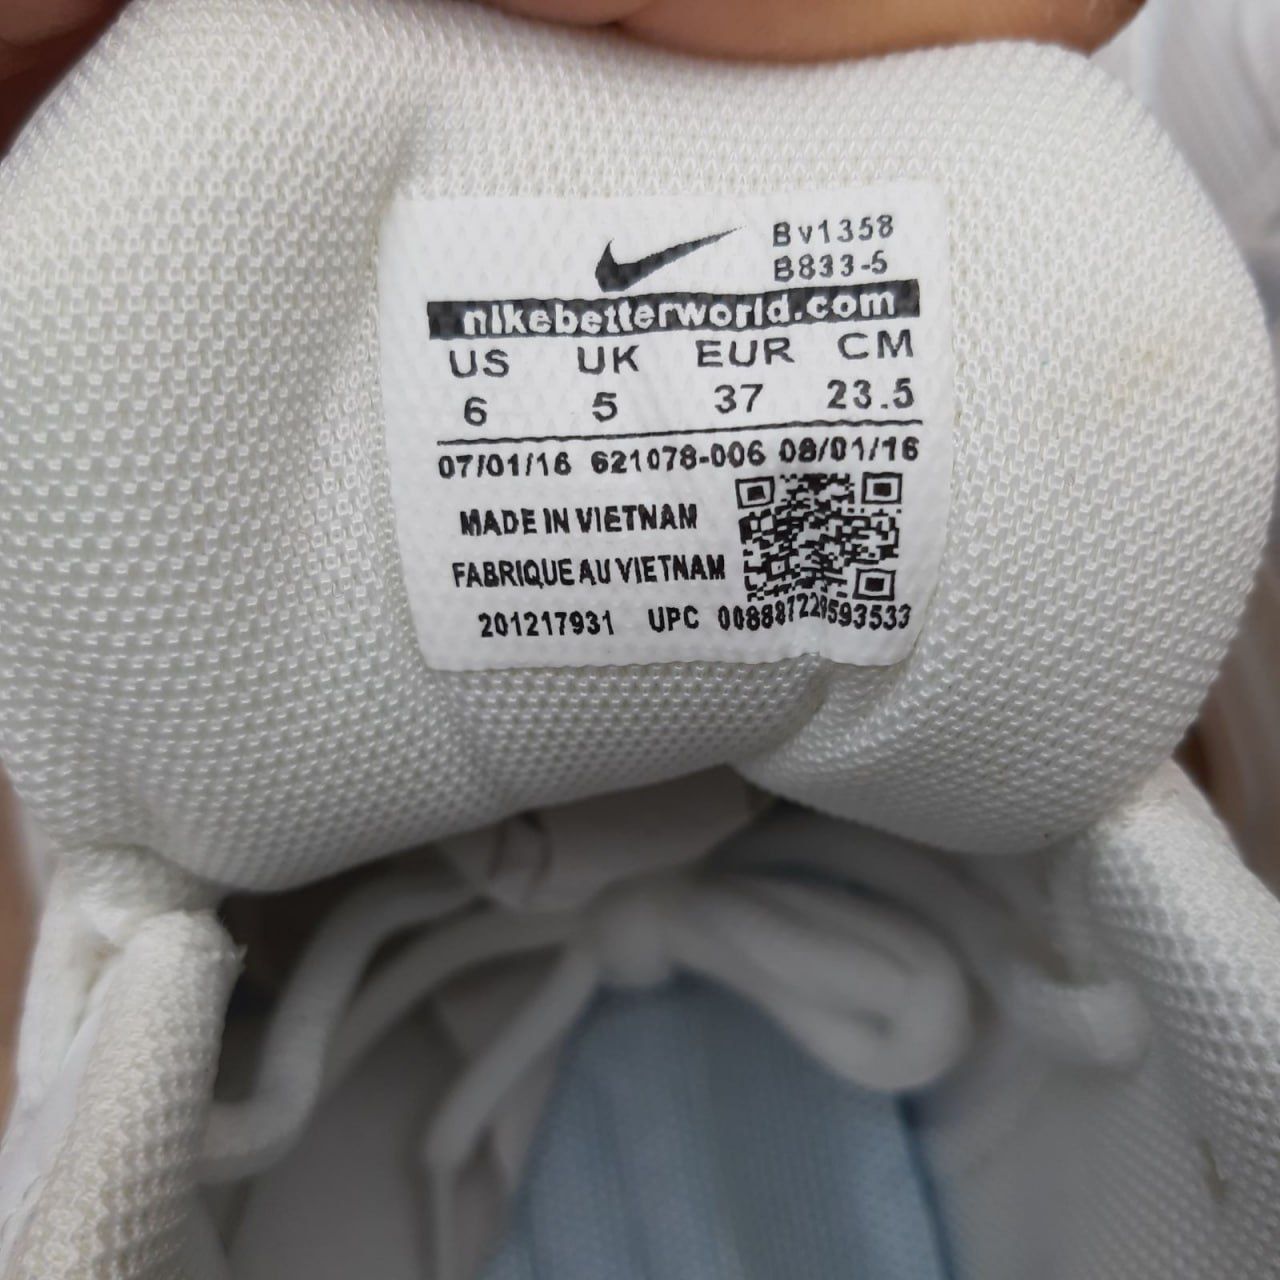 Жіночі кросівки Nike Vomero 5 білі з сірим Женские кроссовки